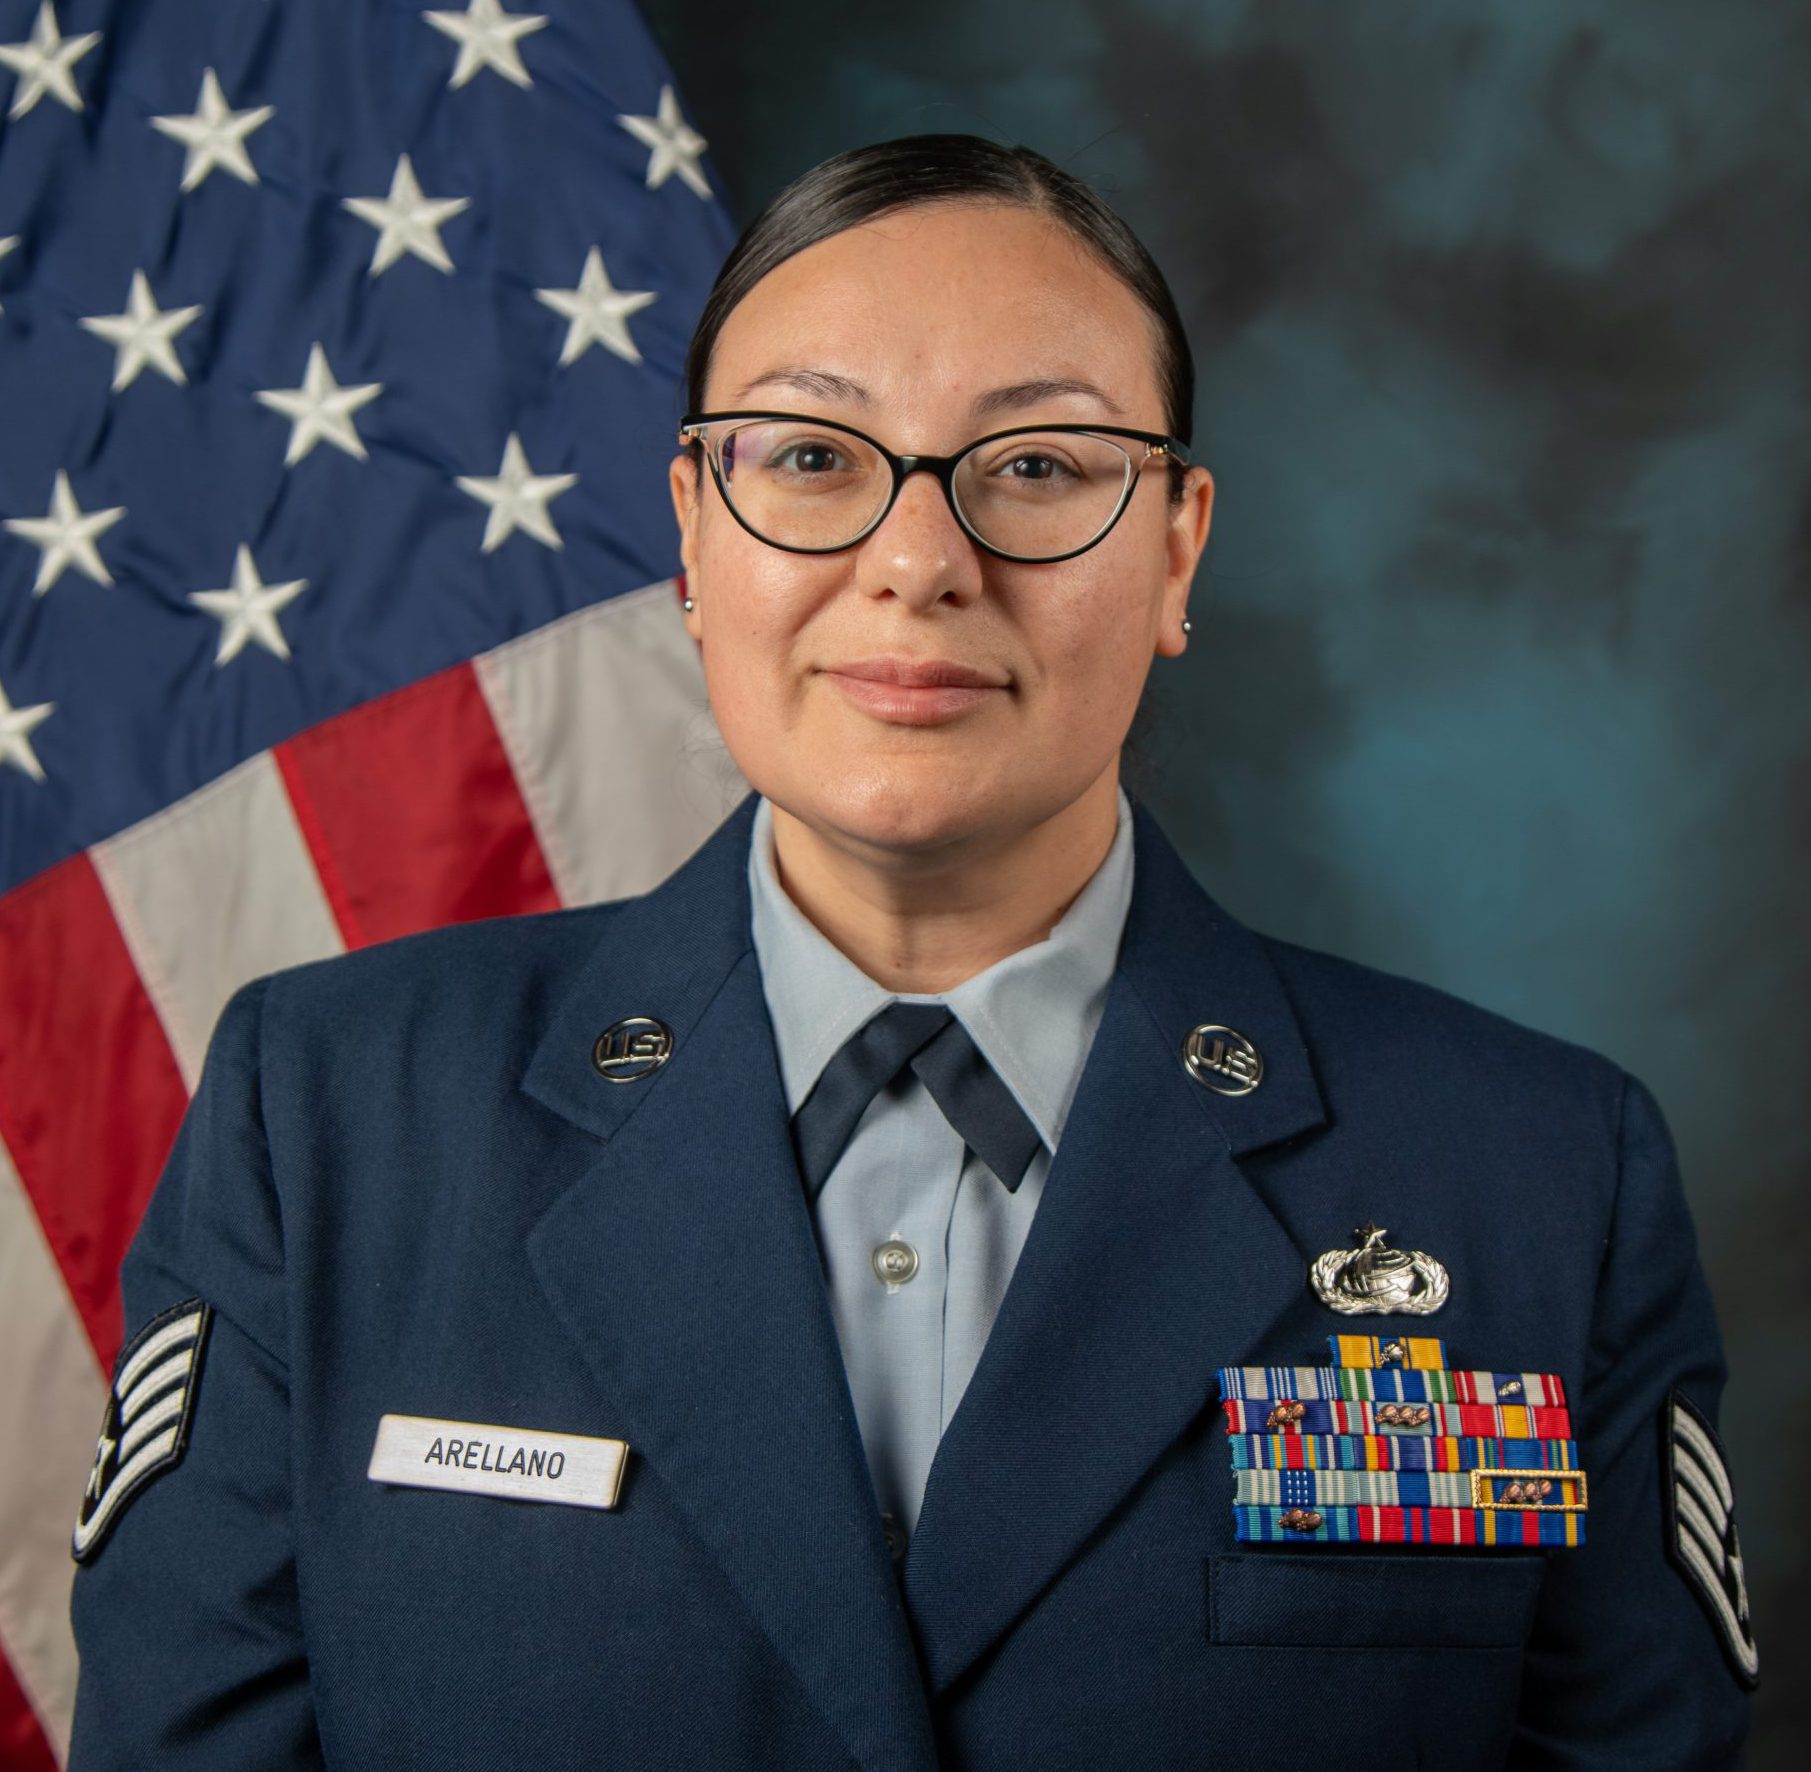 Staff Sergeant Felicia Arellano